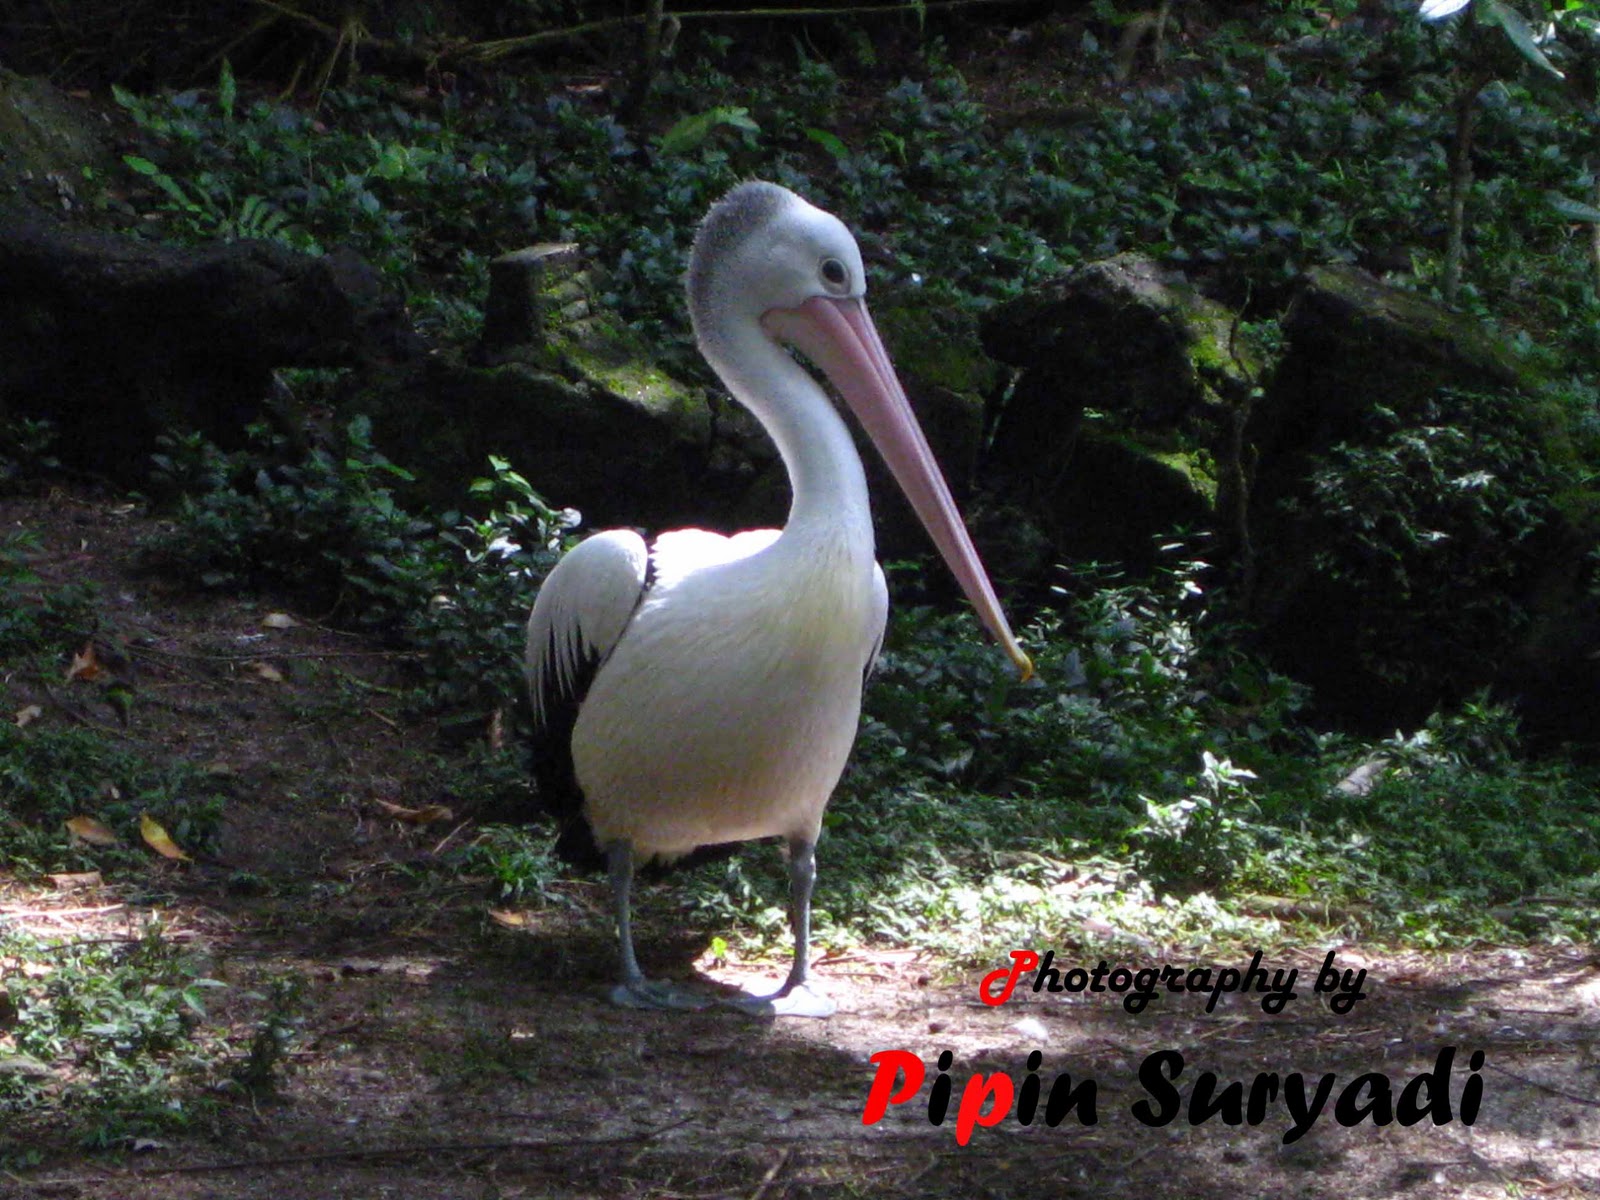 Pipin's Weblog: Pematang Siantar Zoo - More animals